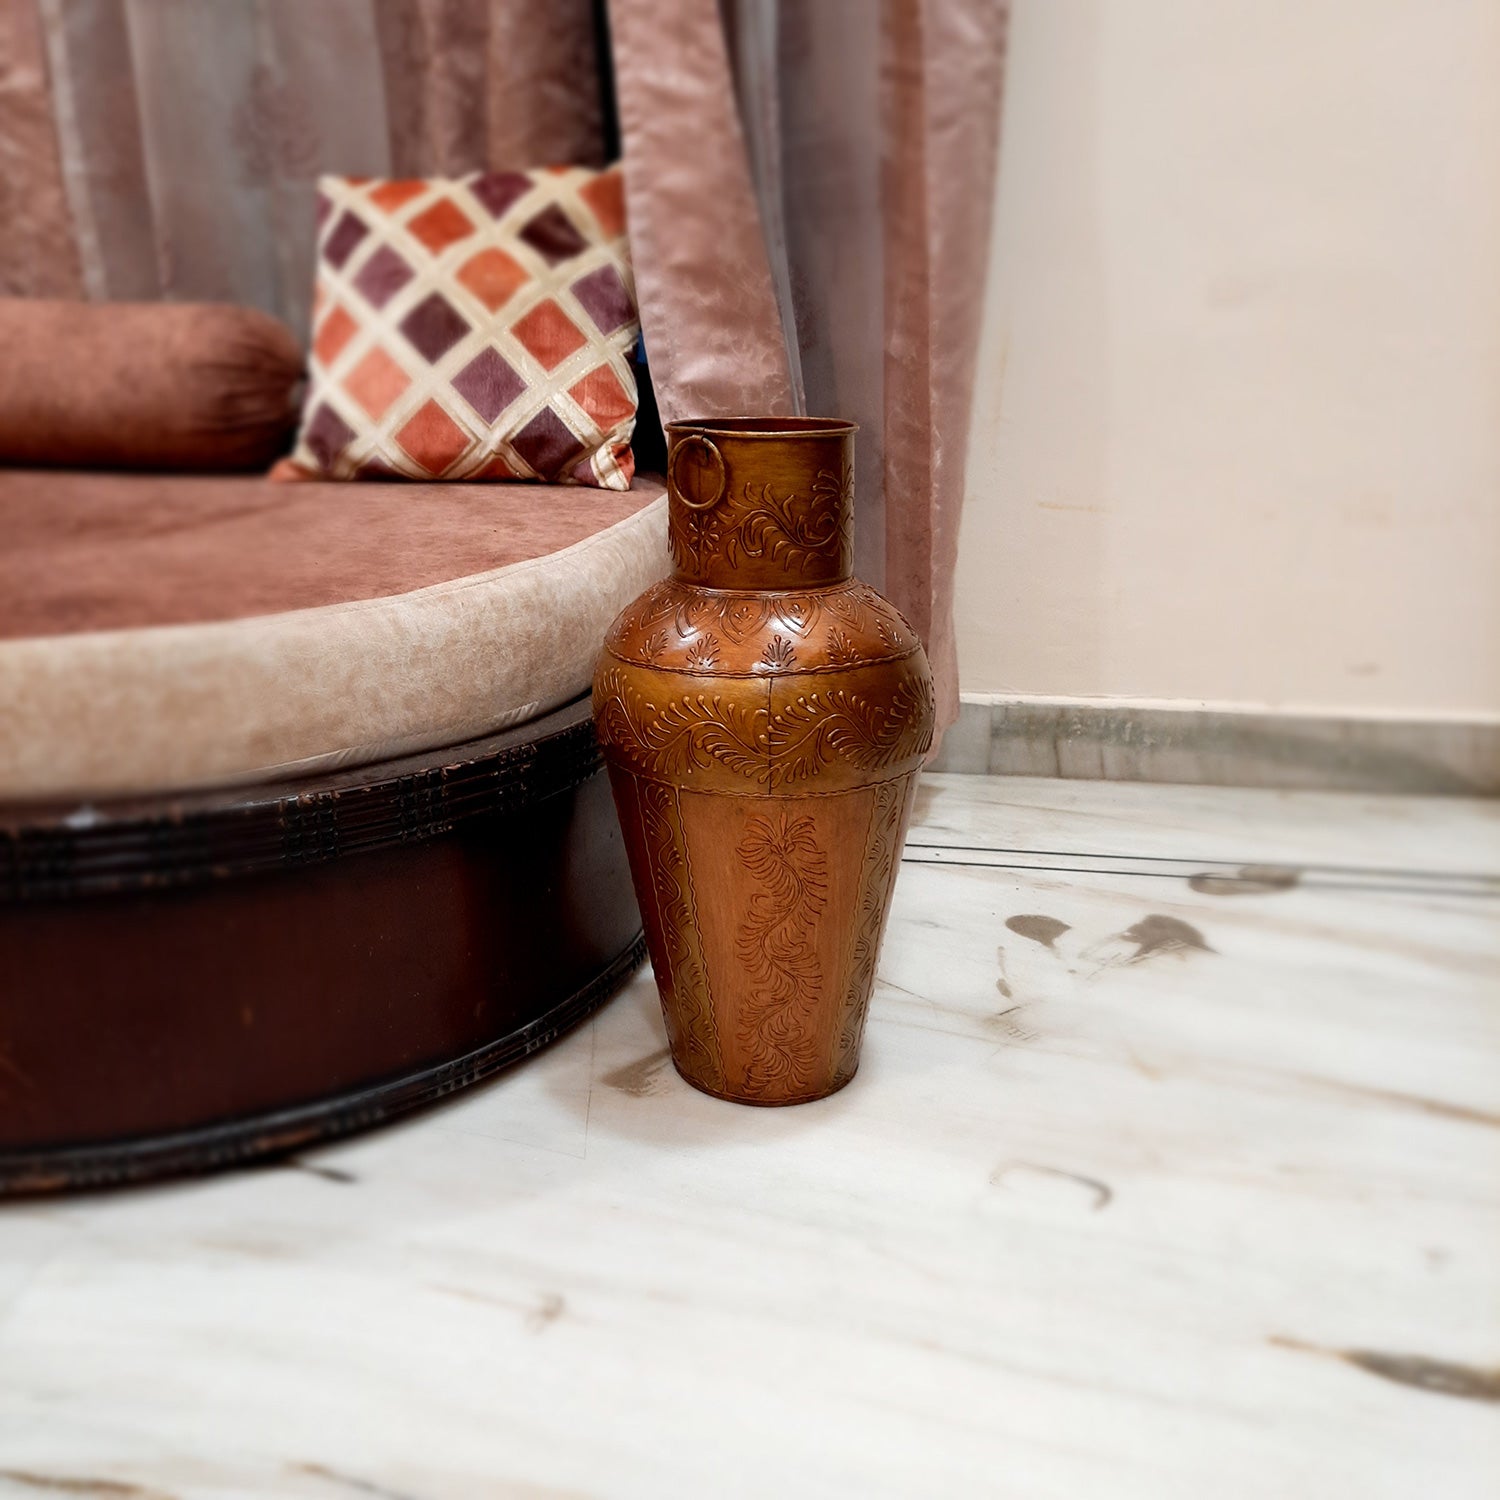 Vase Big | Flower Pot Metal - for Living Room, Home, Corner Decor, Hall-Way & Gifts - 18 Inch - Apkamart